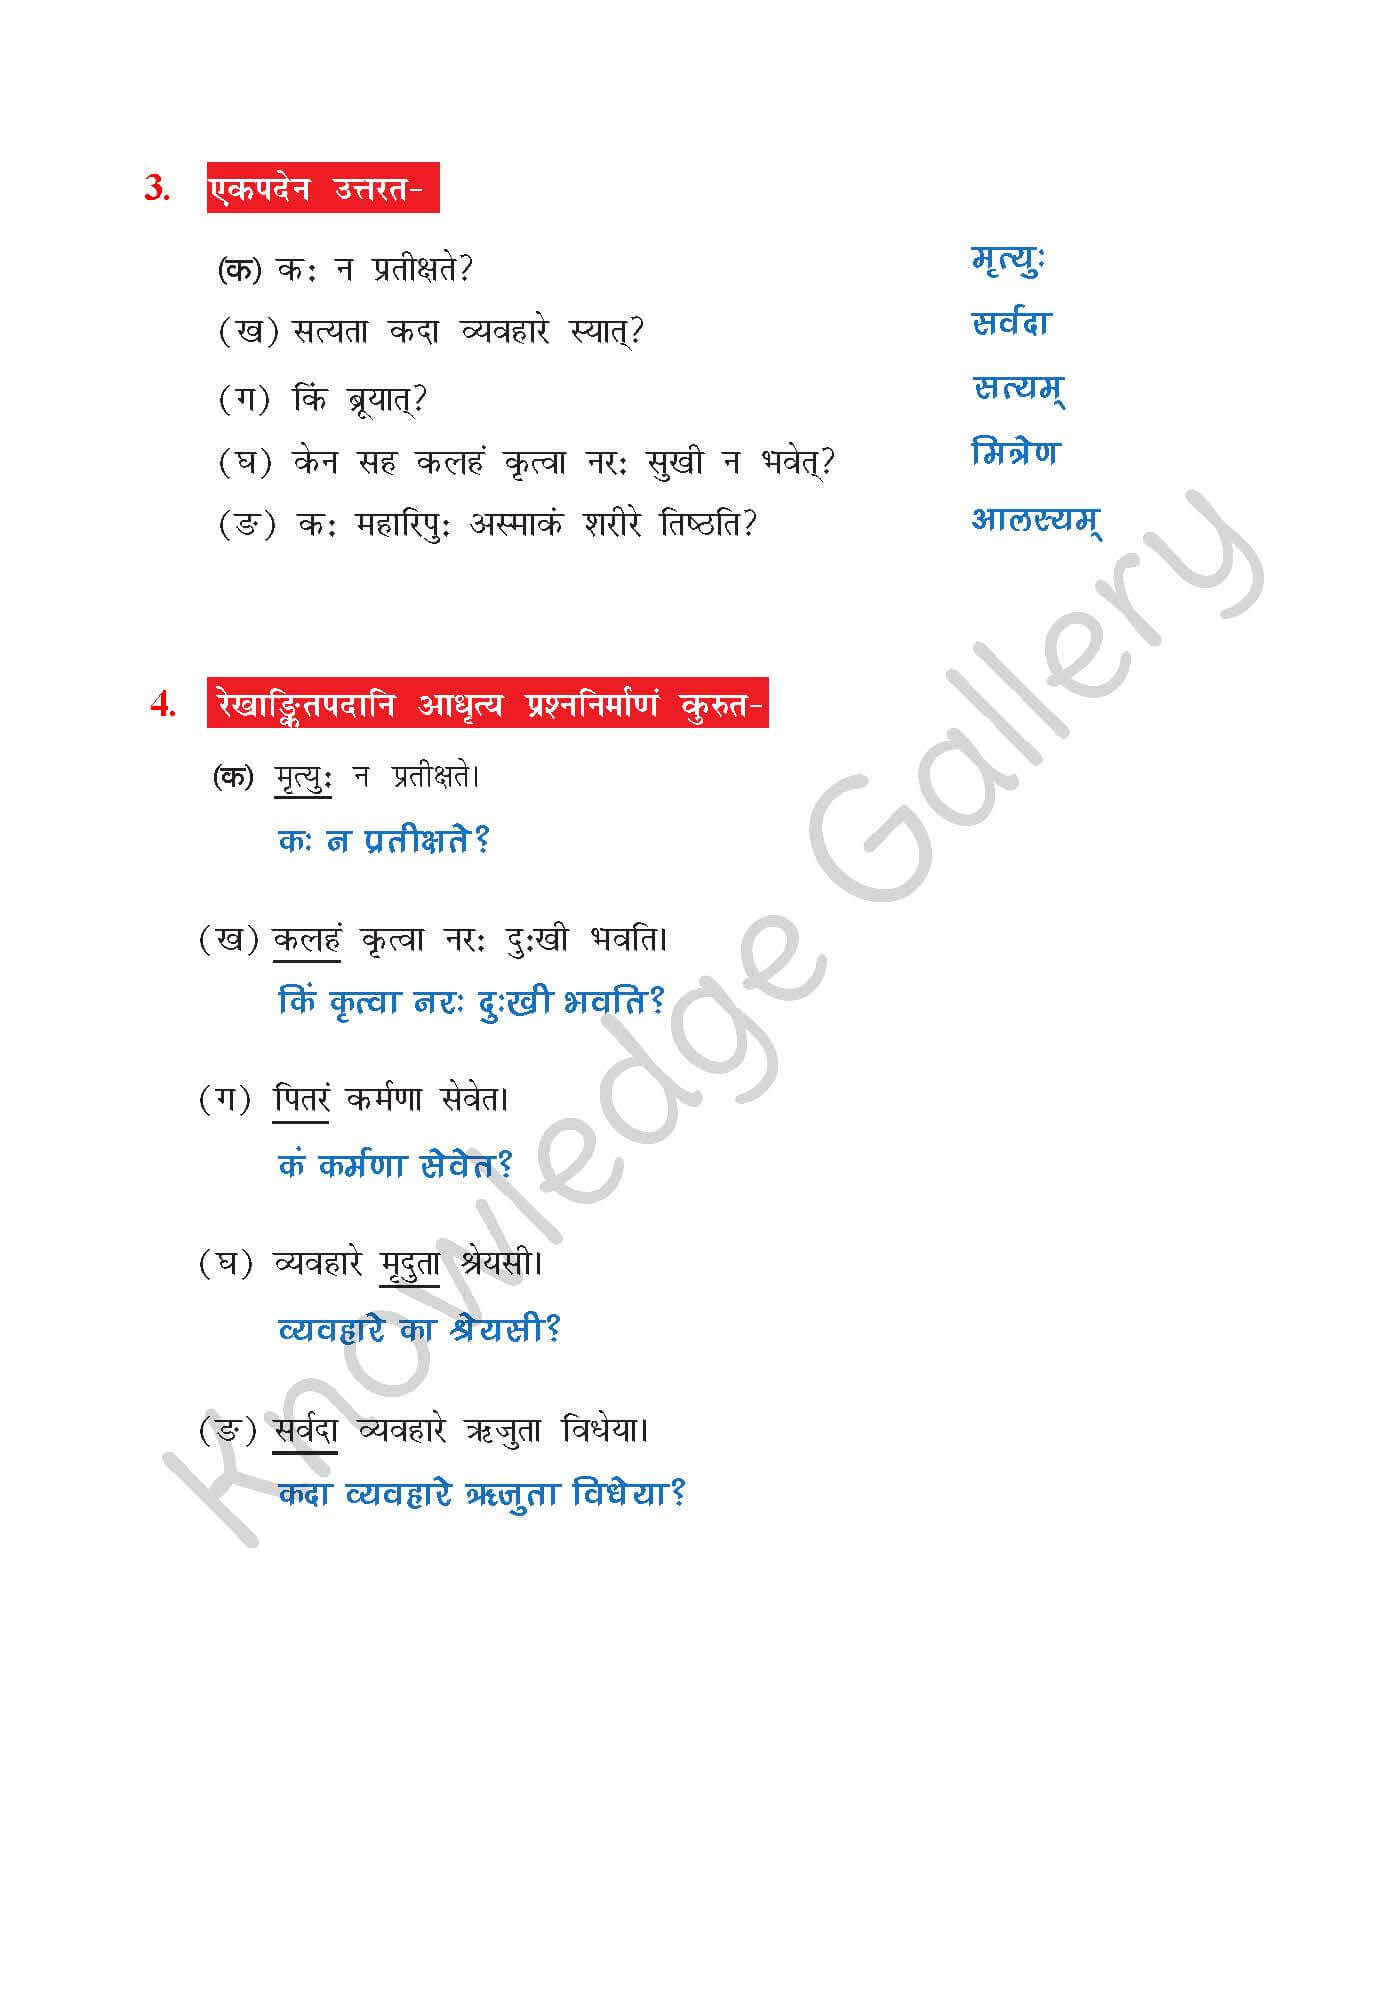 NCERT Solution For Class 7 Sanskrit Chapter 5 part 4